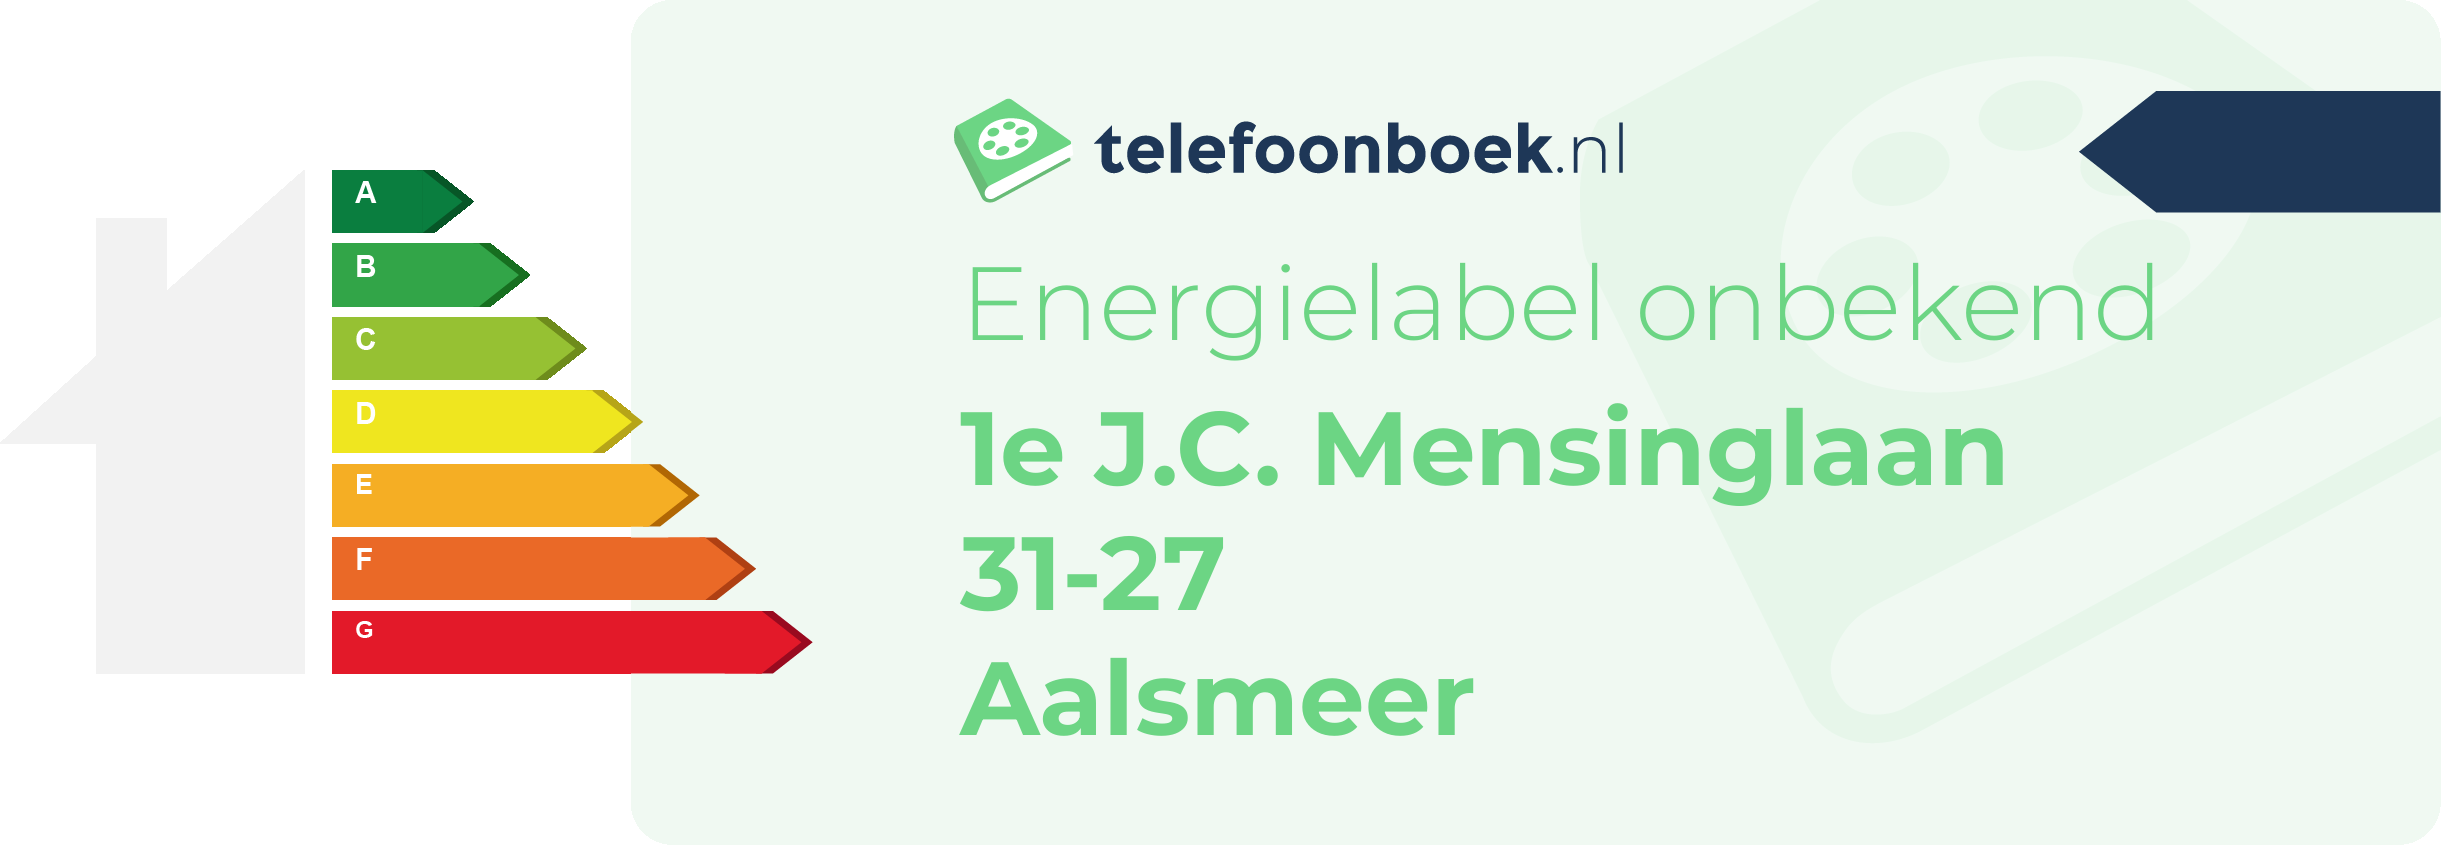 Energielabel 1e J.C. Mensinglaan 31-27 Aalsmeer